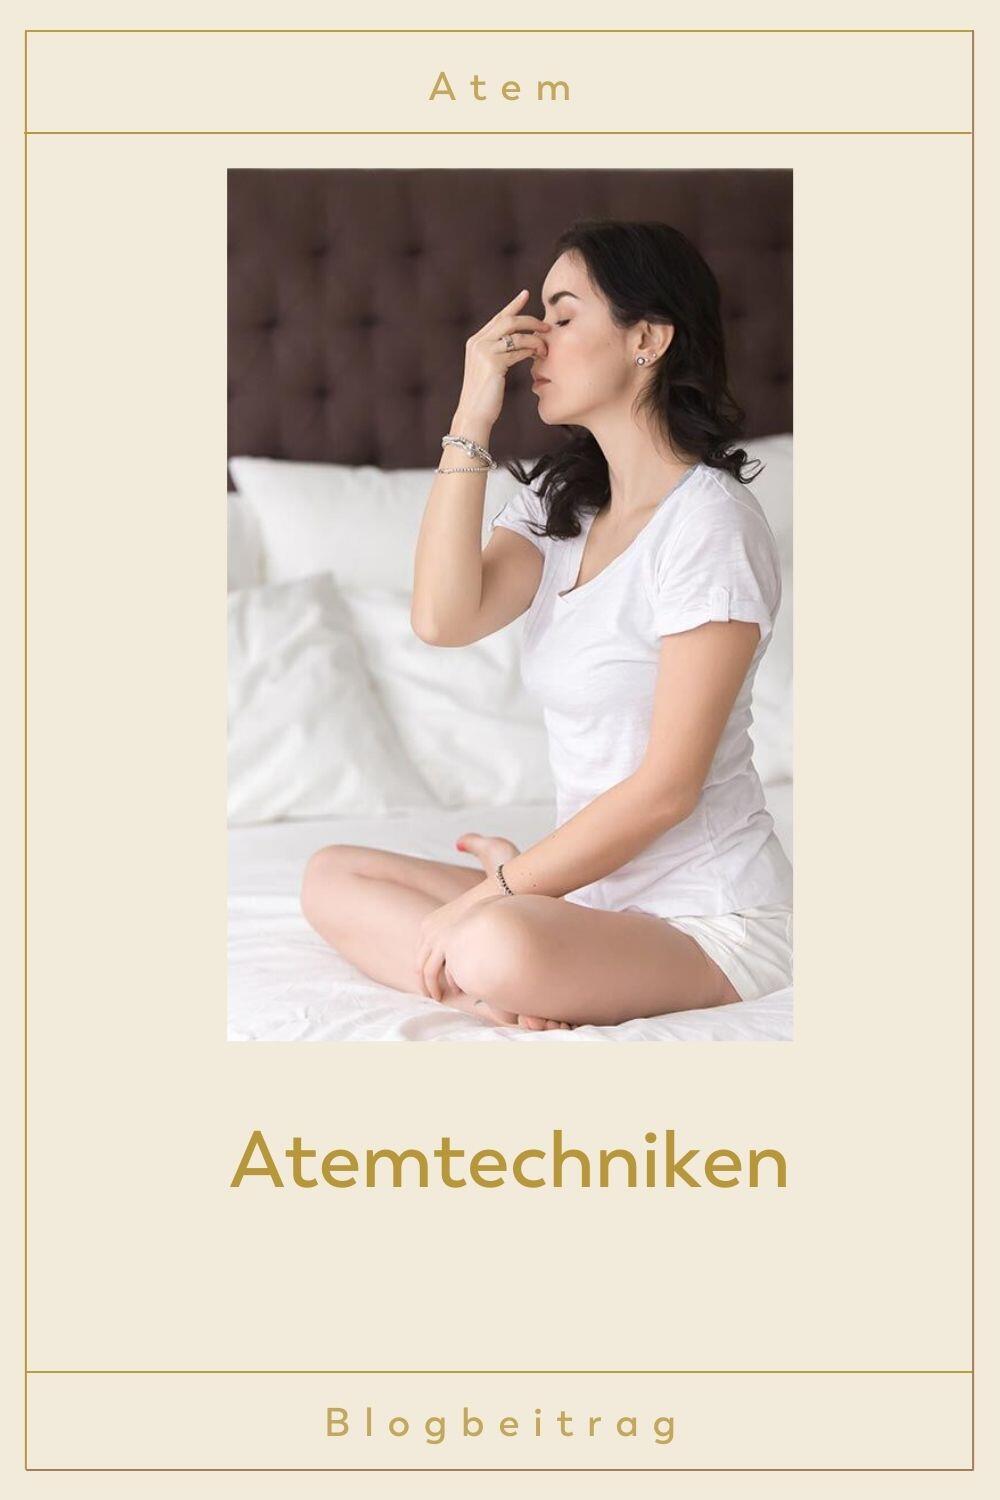 Eine Frau sitzt auf dem Bett und übt Atemtechniken